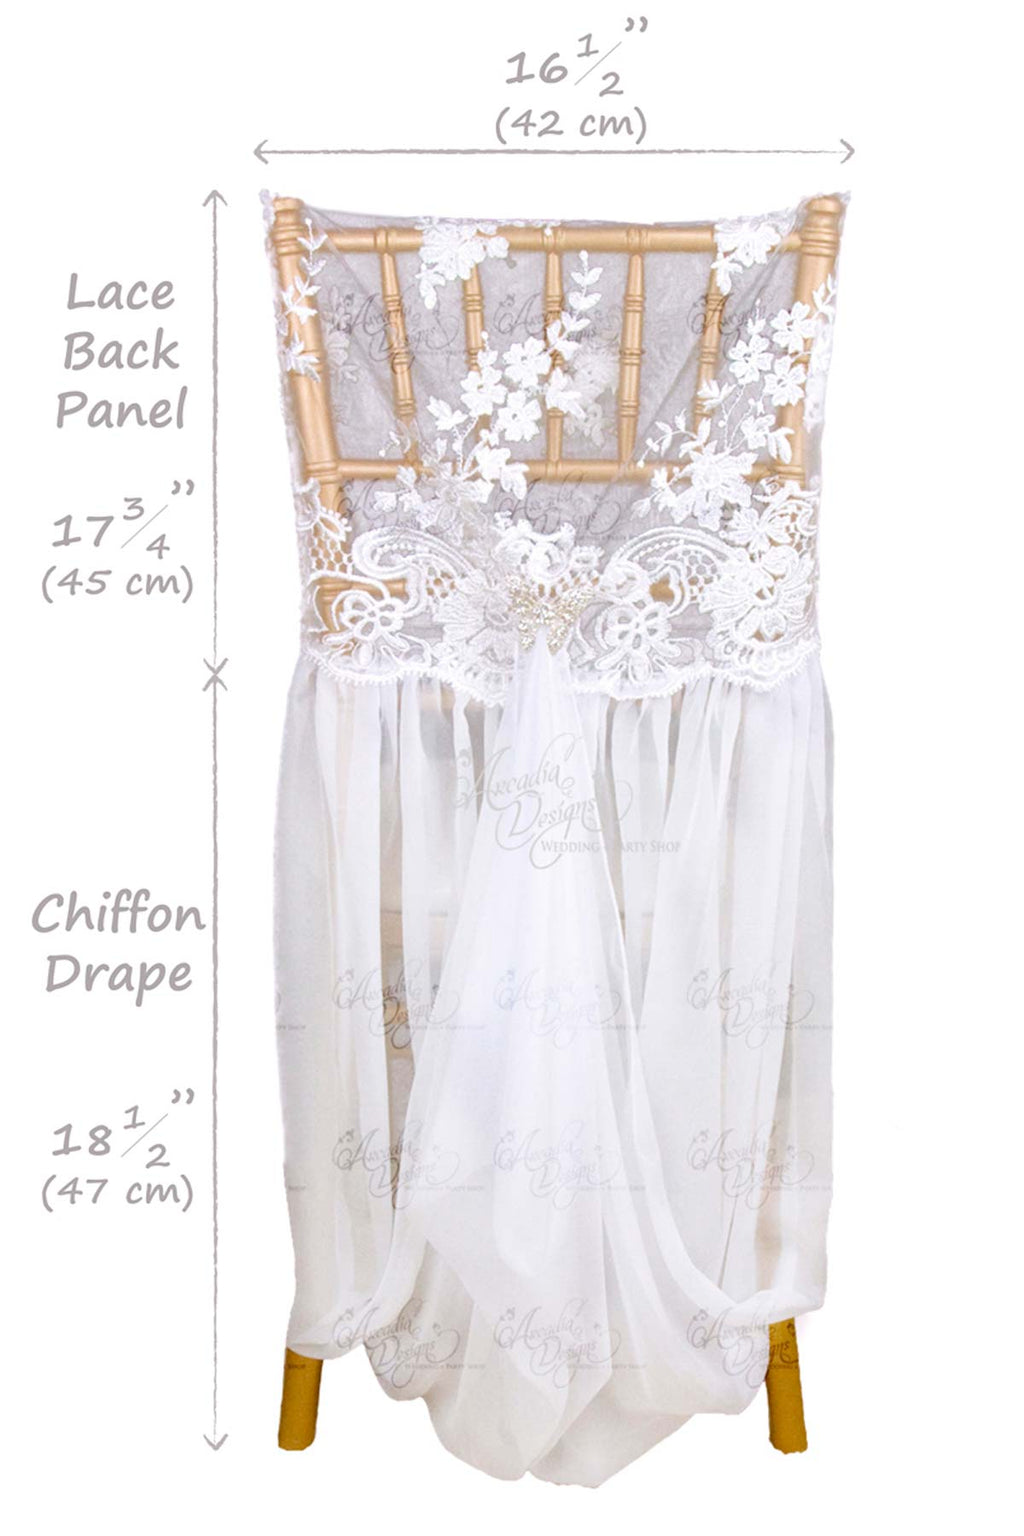 Arcadia Designs Lace Chair Cover with Chiffon Drape Chiavari Chair Folding Chair